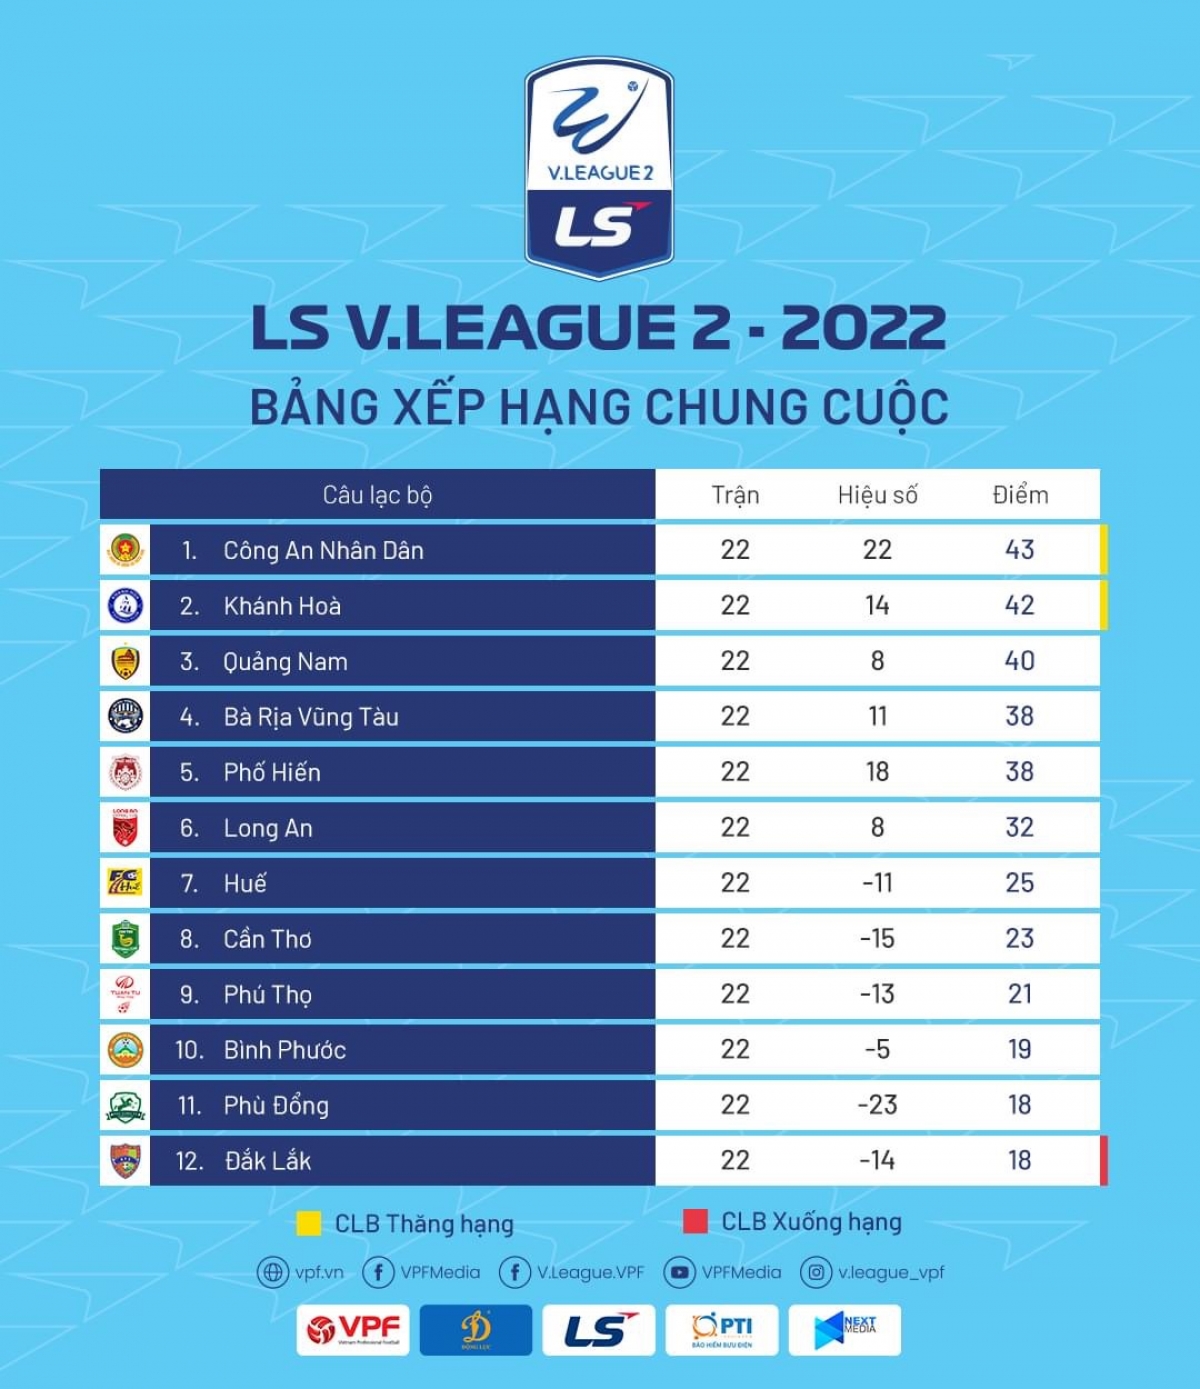 Bảng xếp hạng chung cuộc của giải hạng Nhất quốc gia 2022